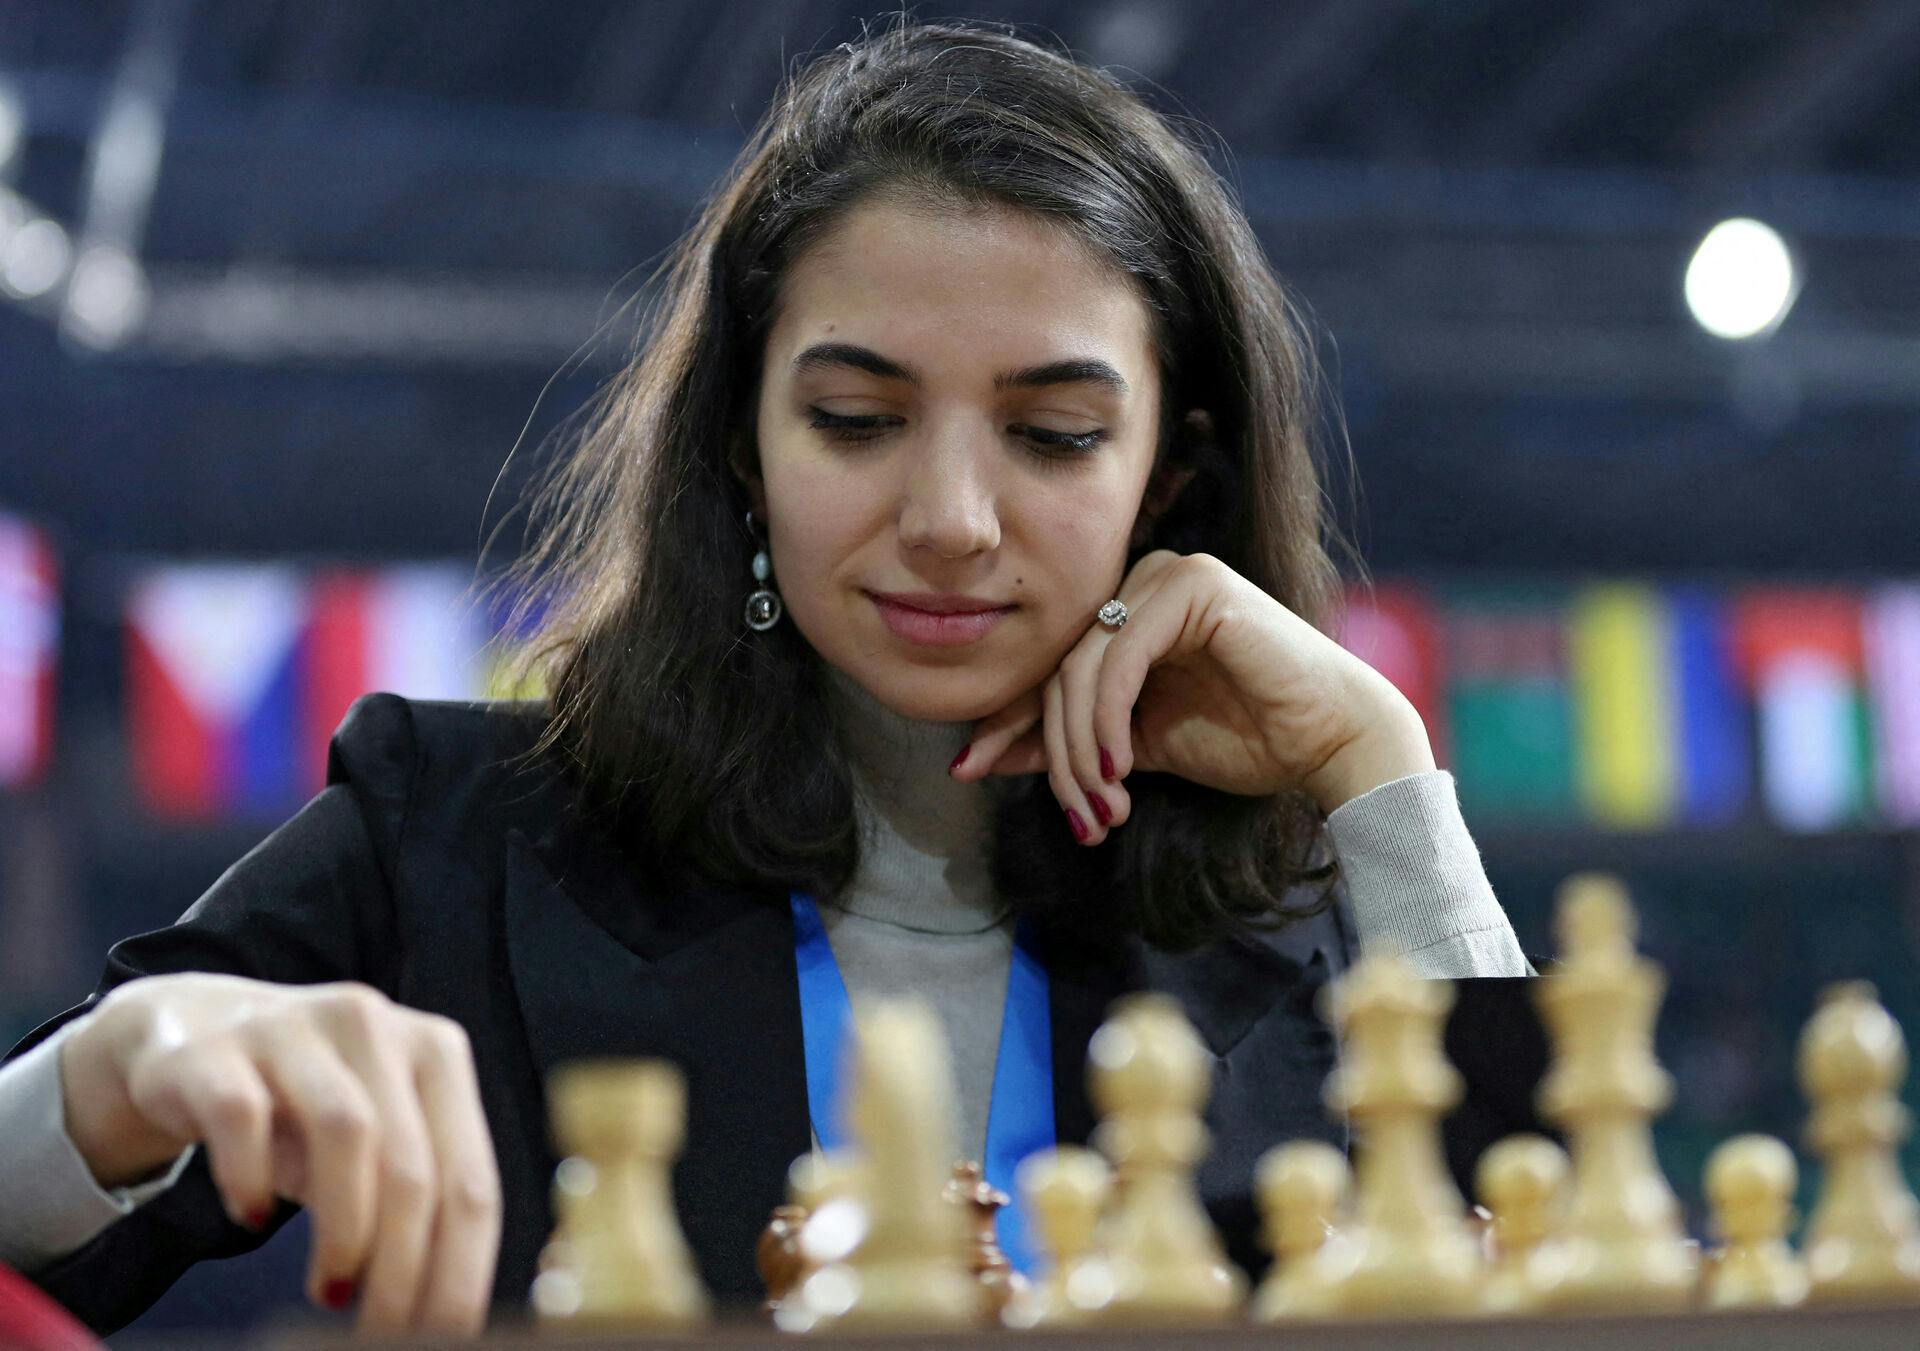 Kun "ægte kvinder" kan spille med i kvindeskak, mener stort skakforbund.